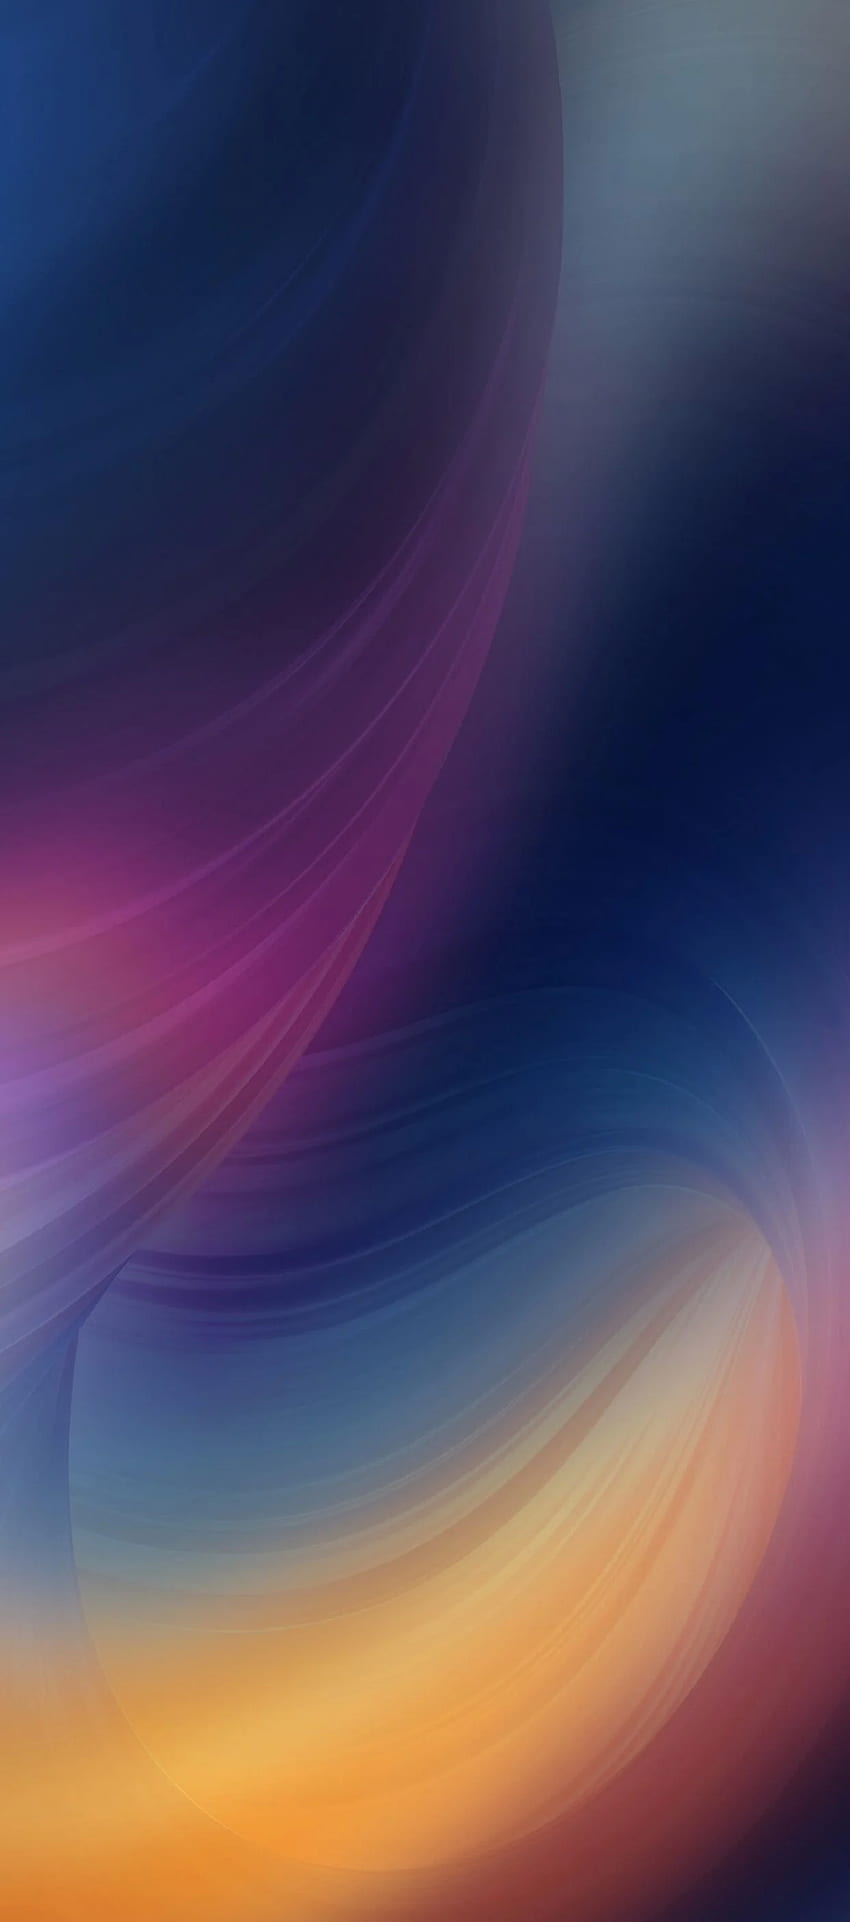 iOS 11, iPhone X, fioletowy, niebieski, czysty, prosty, abstrakcyjny, jabłko, iphone 8, czysty, piękno, colo. Xperia, iPhone 5s, Huawei, iPhone X Streszczenie Tapeta na telefon HD